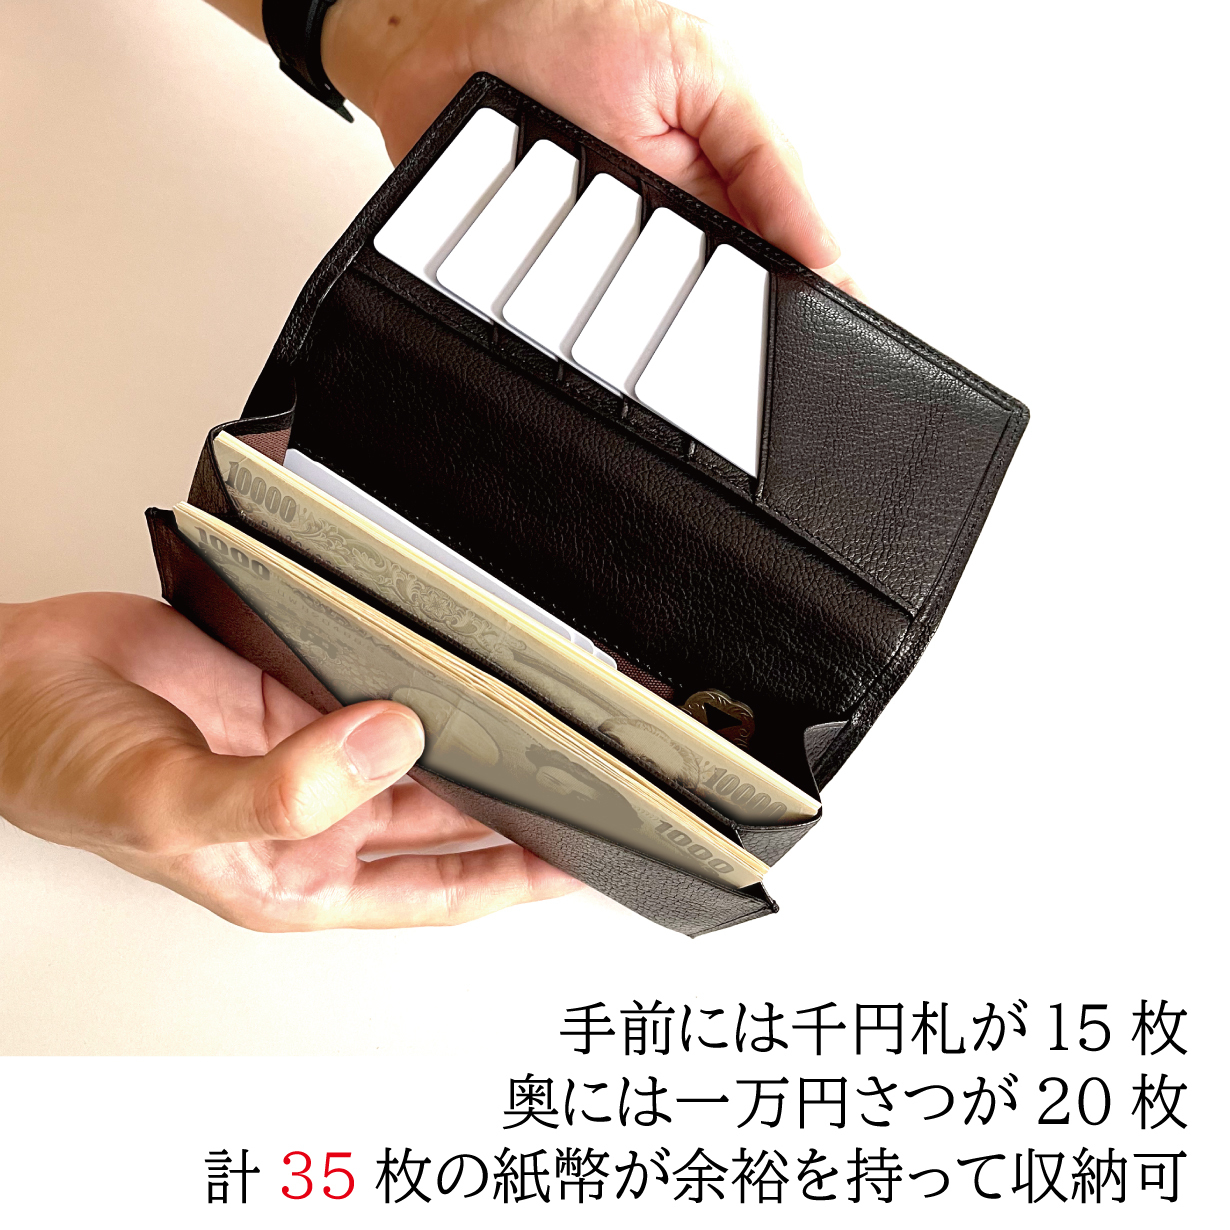 日本の伝統技法と現代の技術が融合した長くない長財布『to・SION 